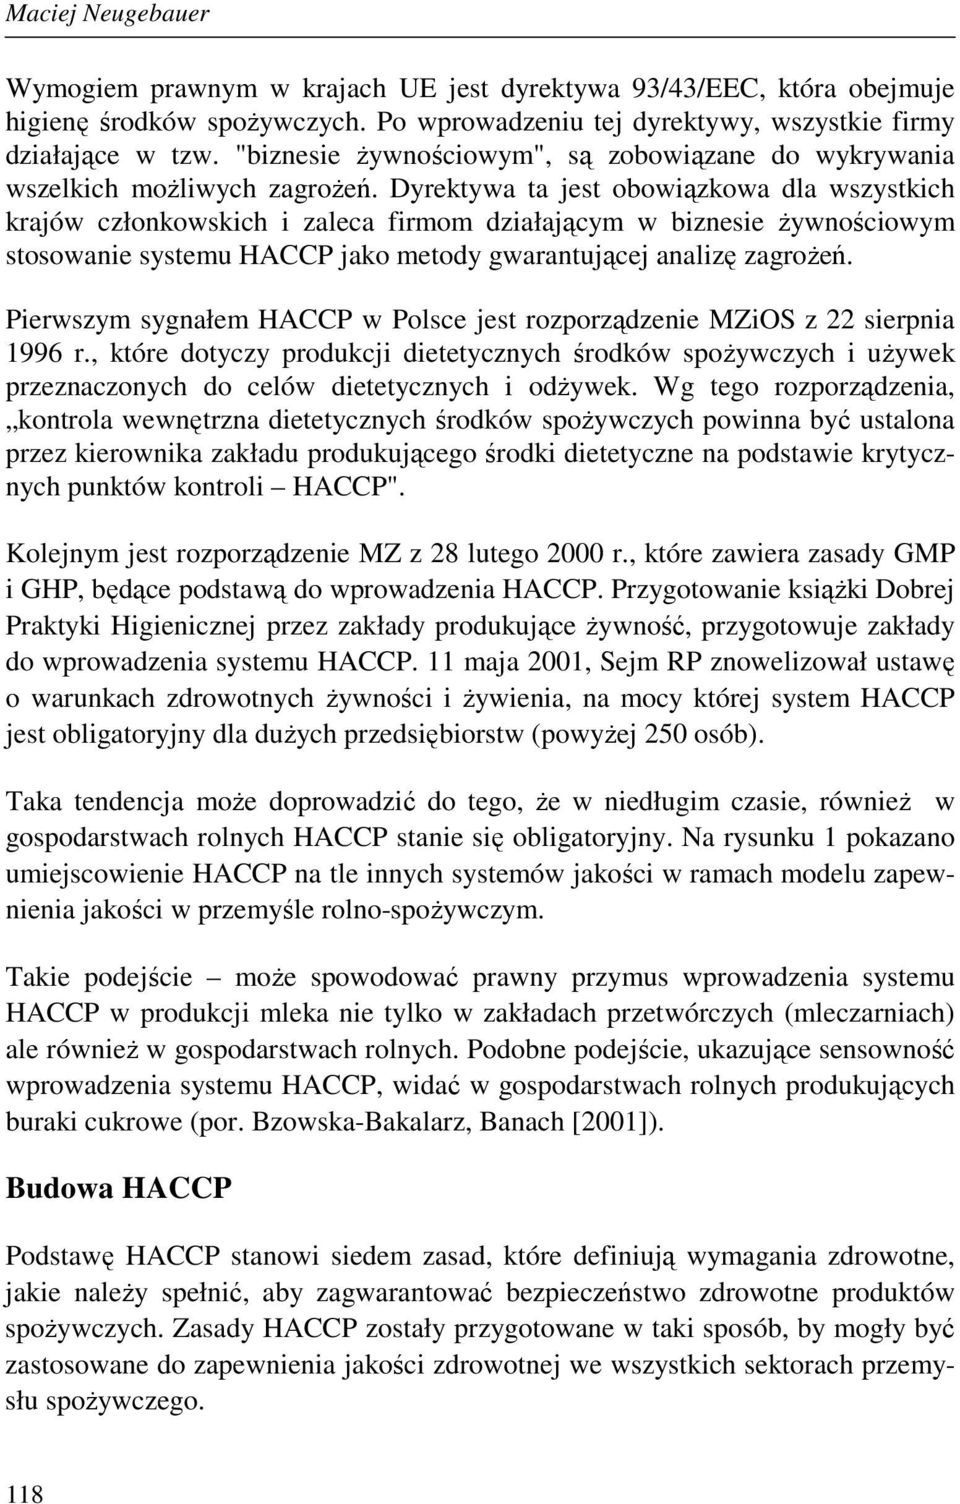 Dyrektywa ta jest obowiązkowa dla wszystkich krajów członkowskich i zaleca firmom działającym w biznesie Ŝywnościowym stosowanie systemu HACCP jako metody gwarantującej analizę zagroŝeń.